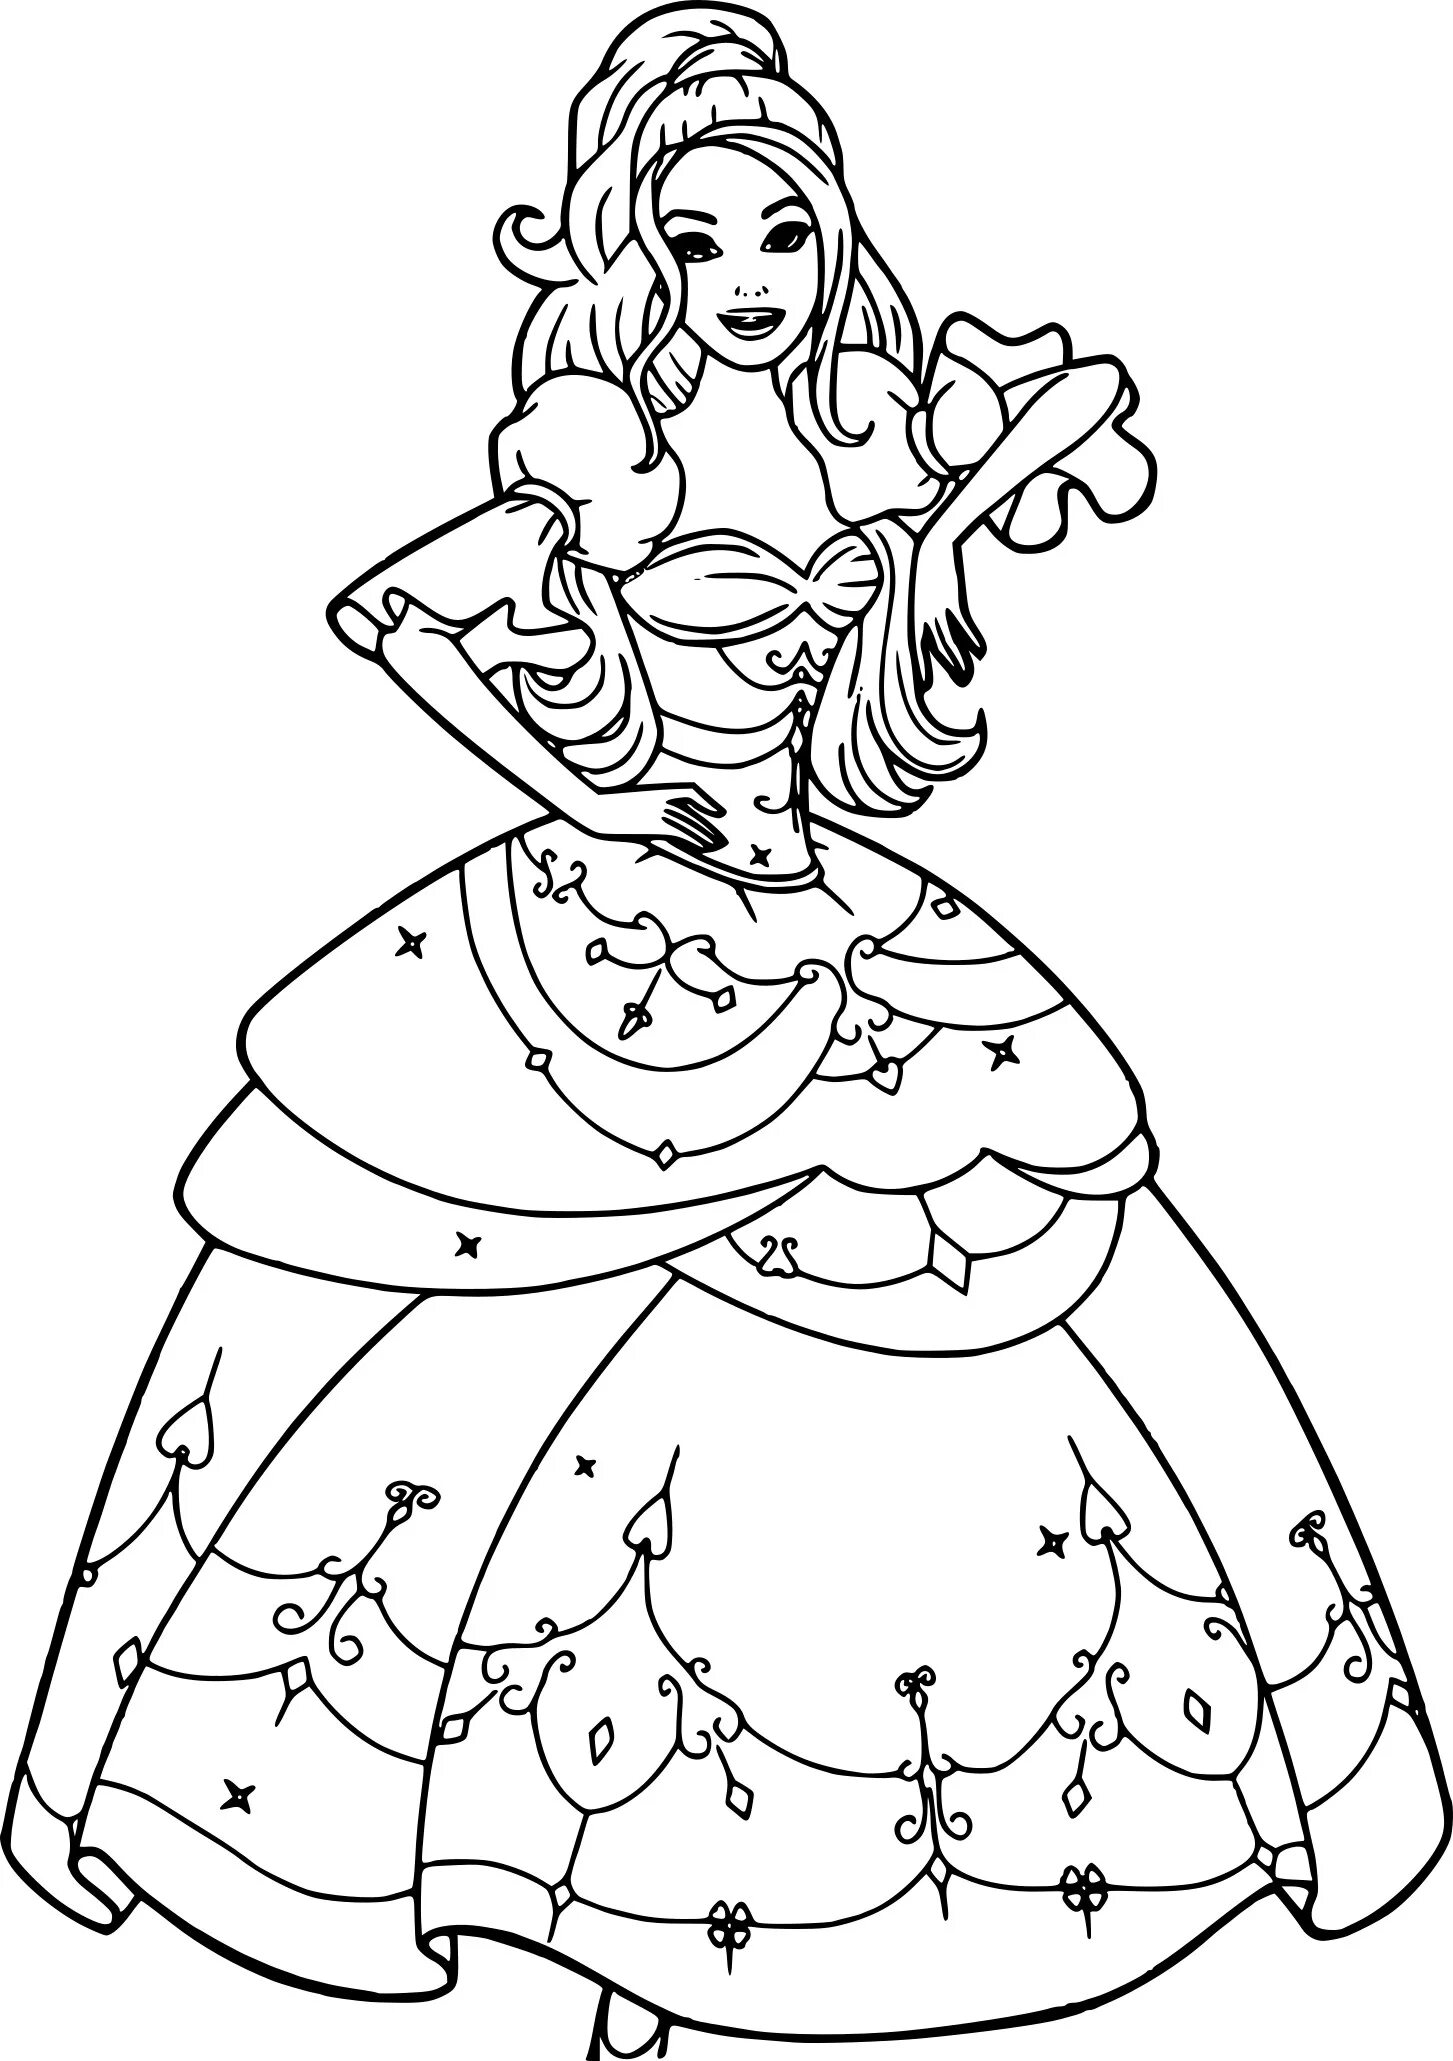 Раскраска платье принцессы. Принцесса. Раскраска. Раскраски для девочек принцессы. Раскраска Барби принцесса.